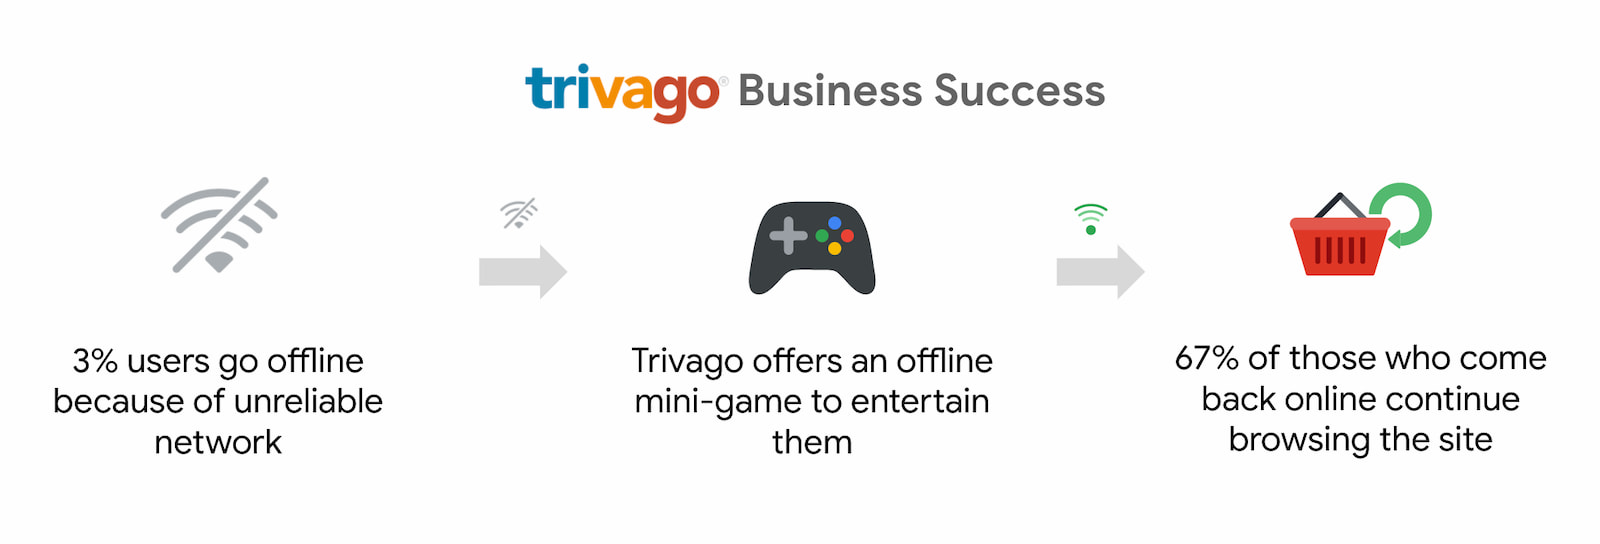 Trivago ने ऑनलाइन प्लैटफ़ॉर्म पर वापस आकर ब्राउज़ करना जारी रखने वाले उपयोगकर्ताओं की संख्या में 67% की बढ़ोतरी हासिल की.